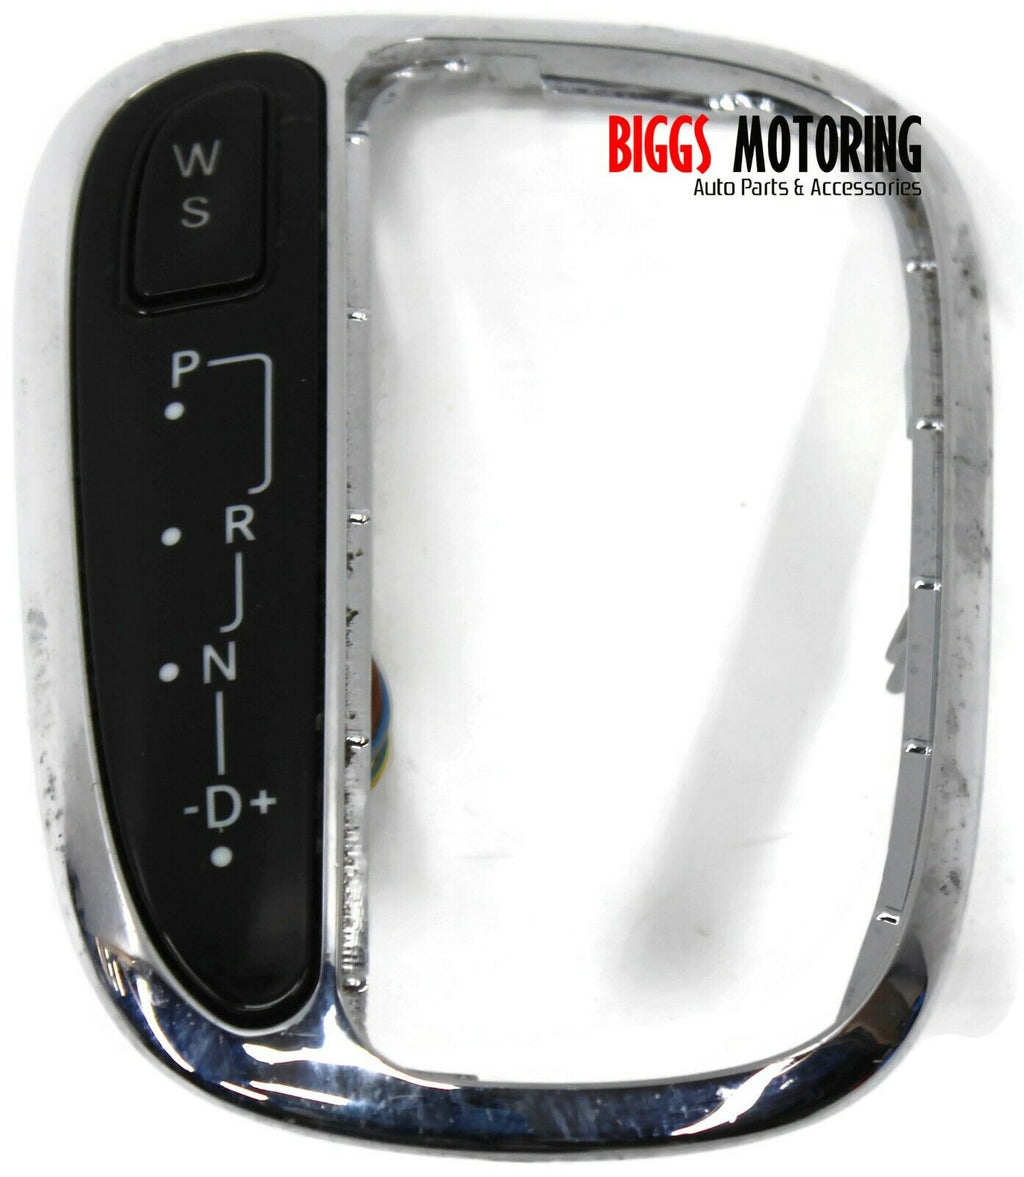 2005-2007 Mercedes W203 C280 Gear Shifter Boot Knob Bezel Trim - BIGGSMOTORING.COM